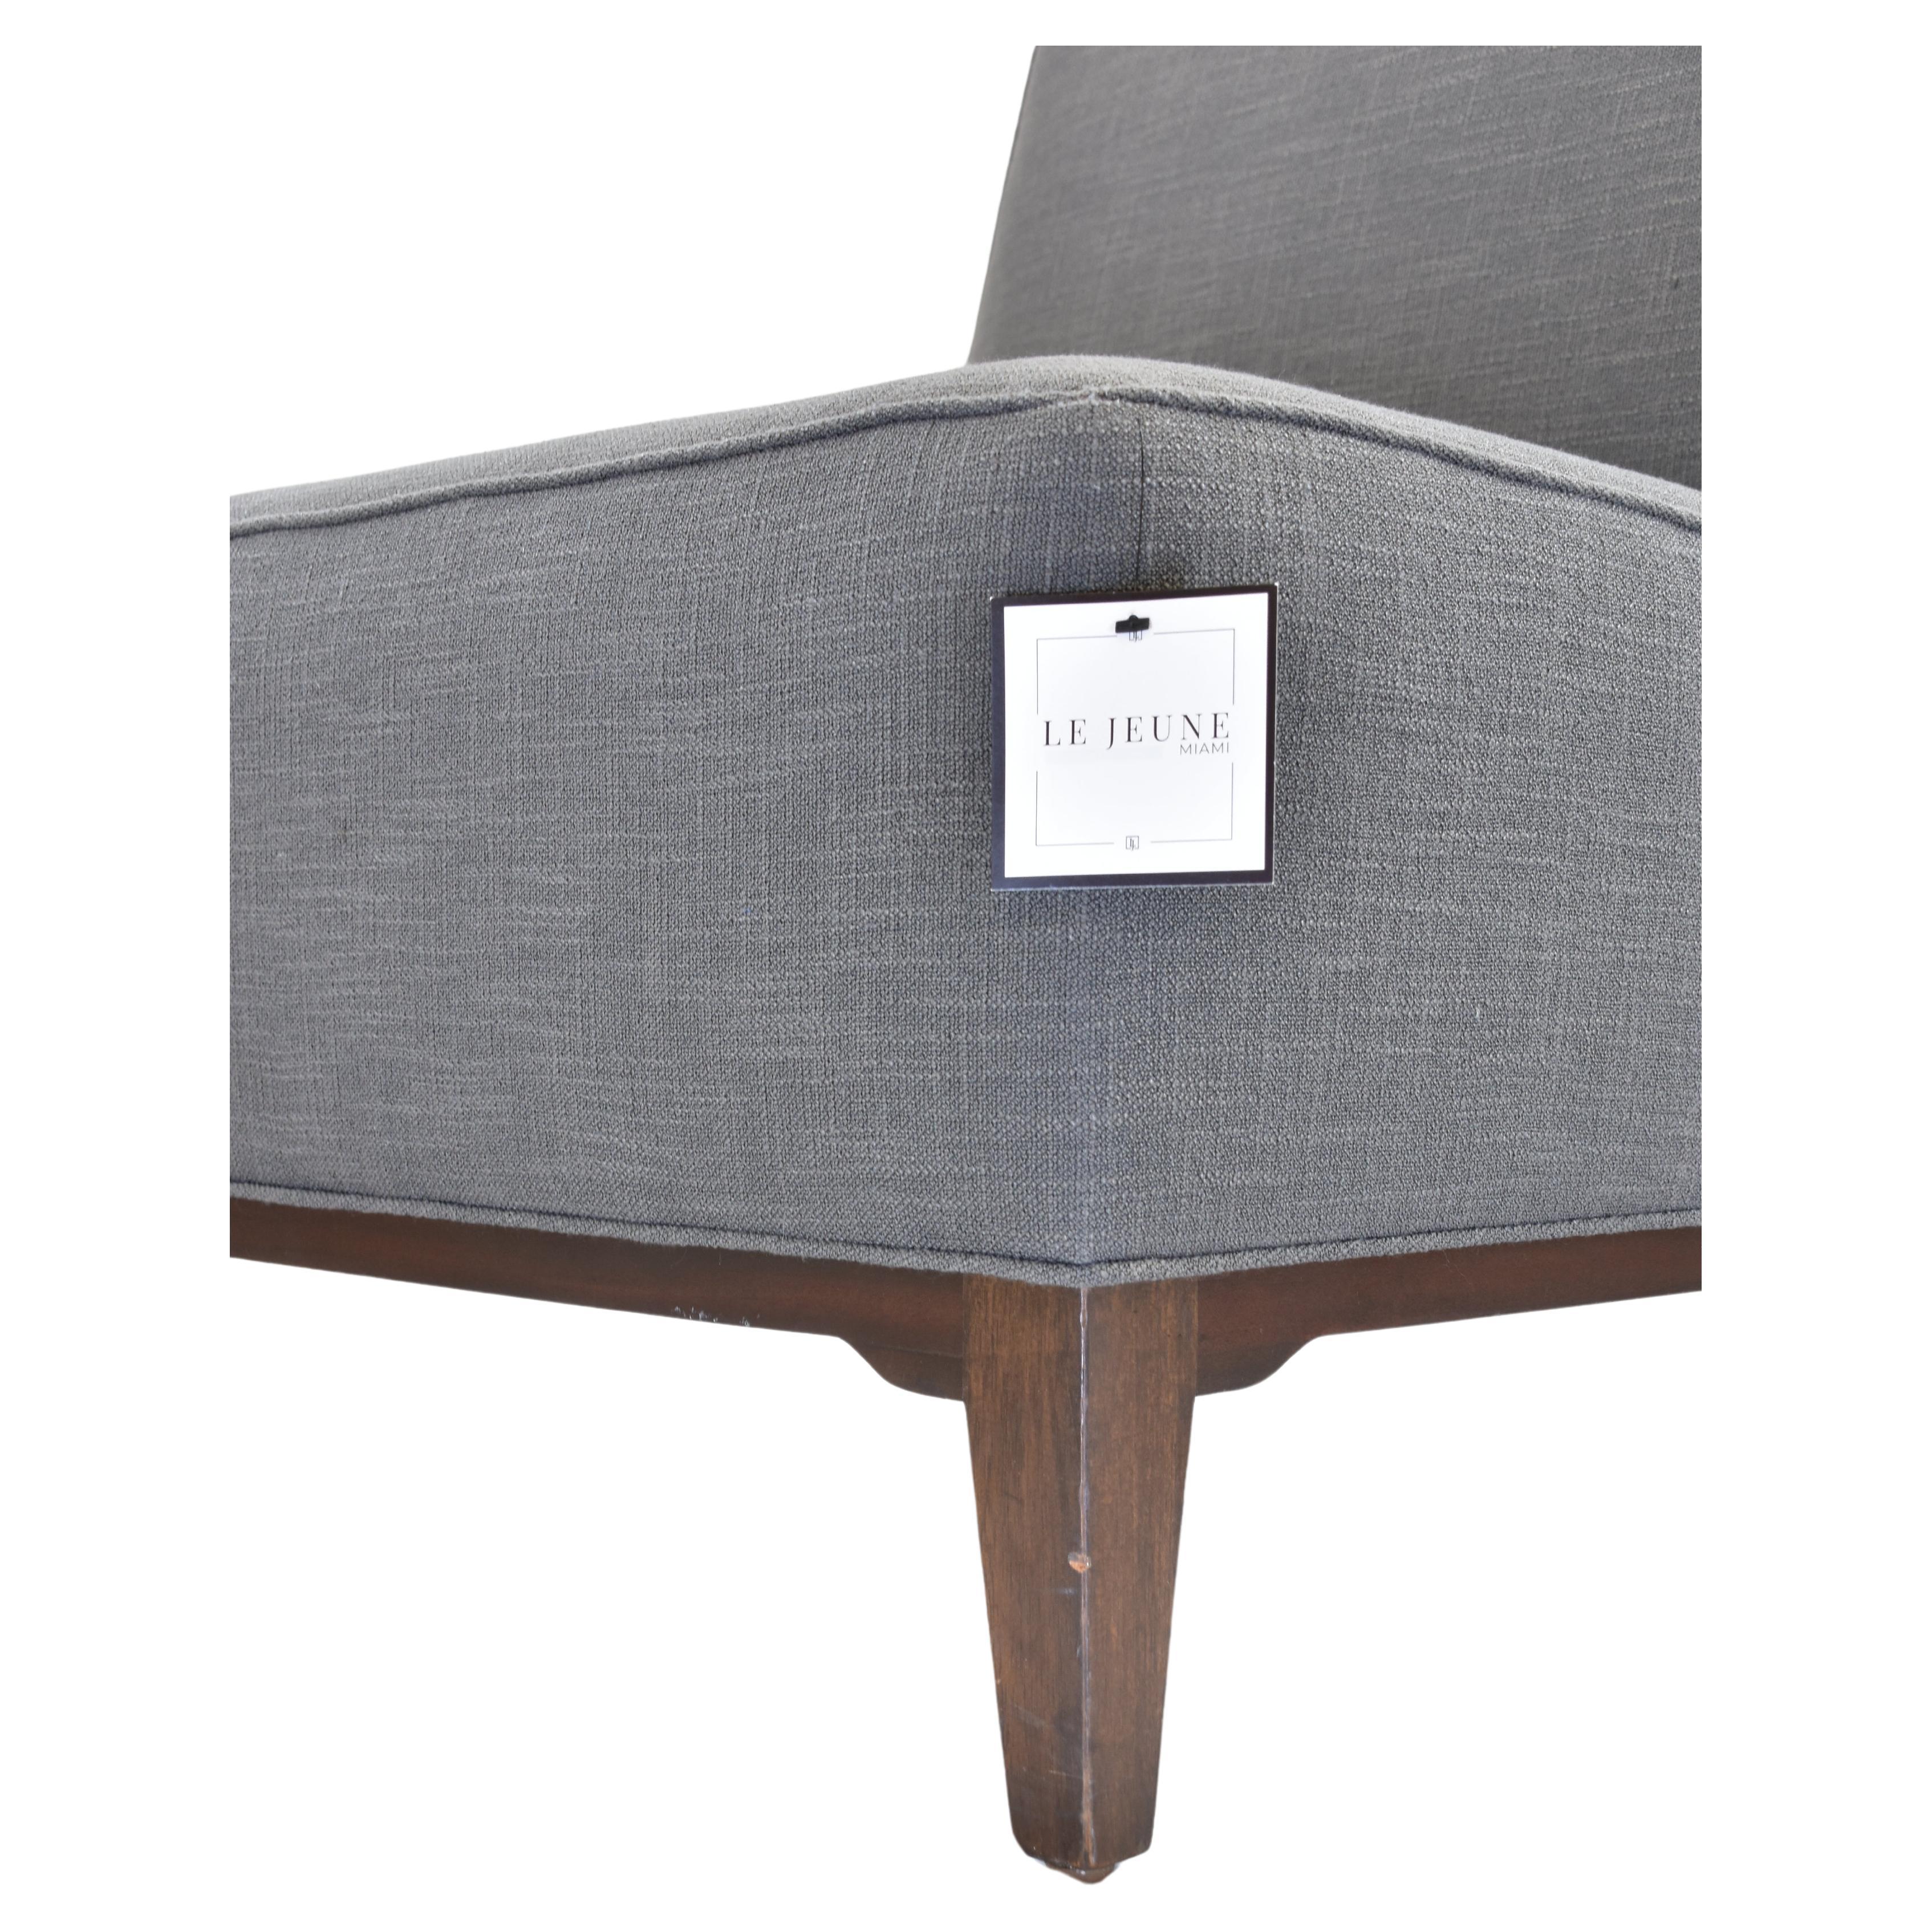 Le Jeune Upholstery Loft Slipper Chair Showroom Model For Sale 4